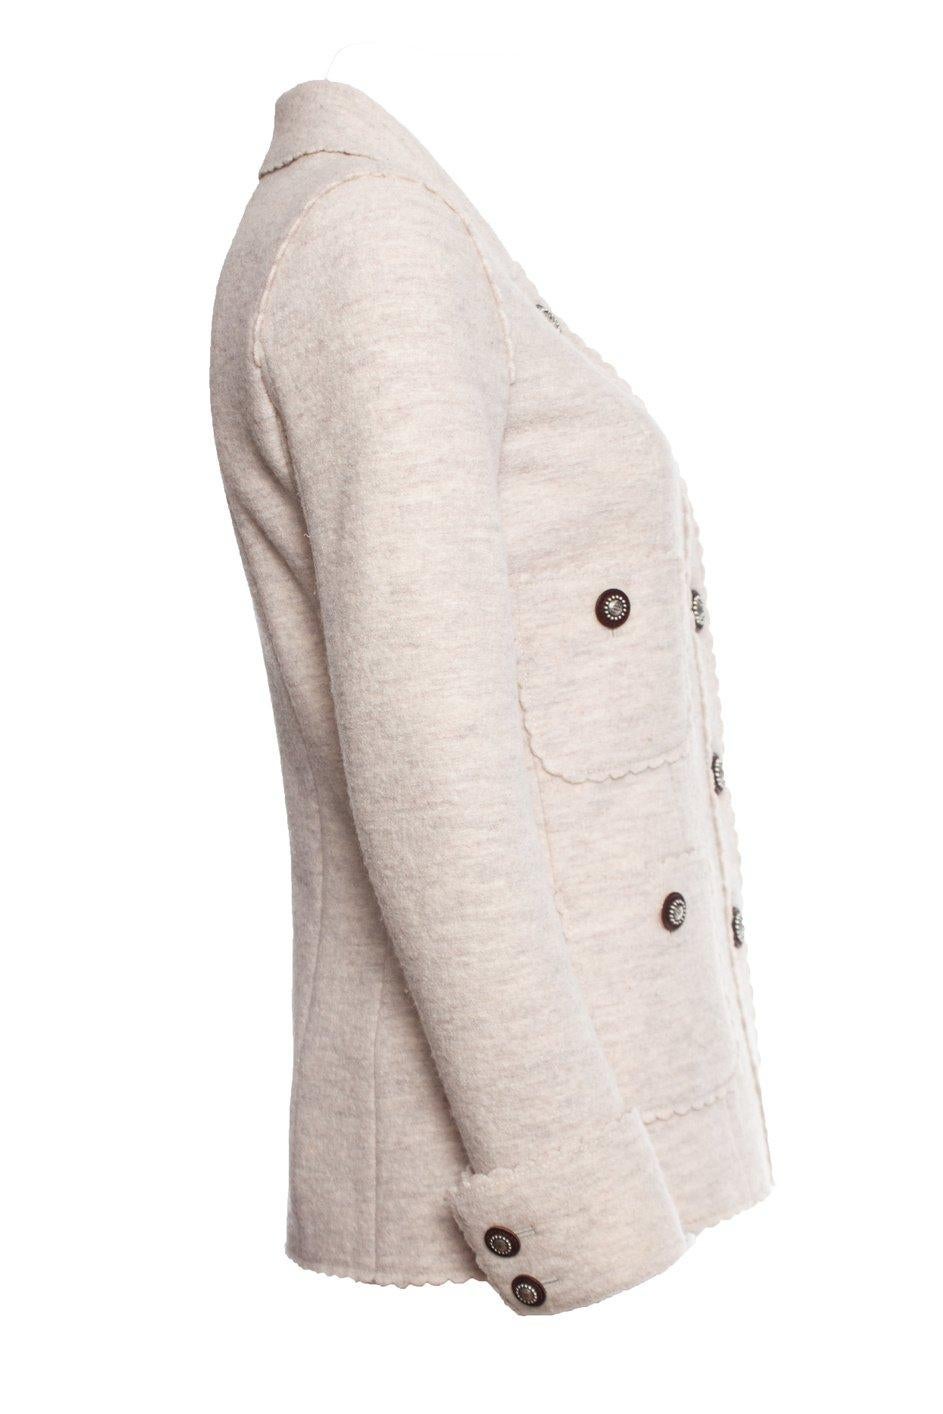 Chanel 9K$ Runway Paris / Dallas Beige Tweed Jacket For Sale 15